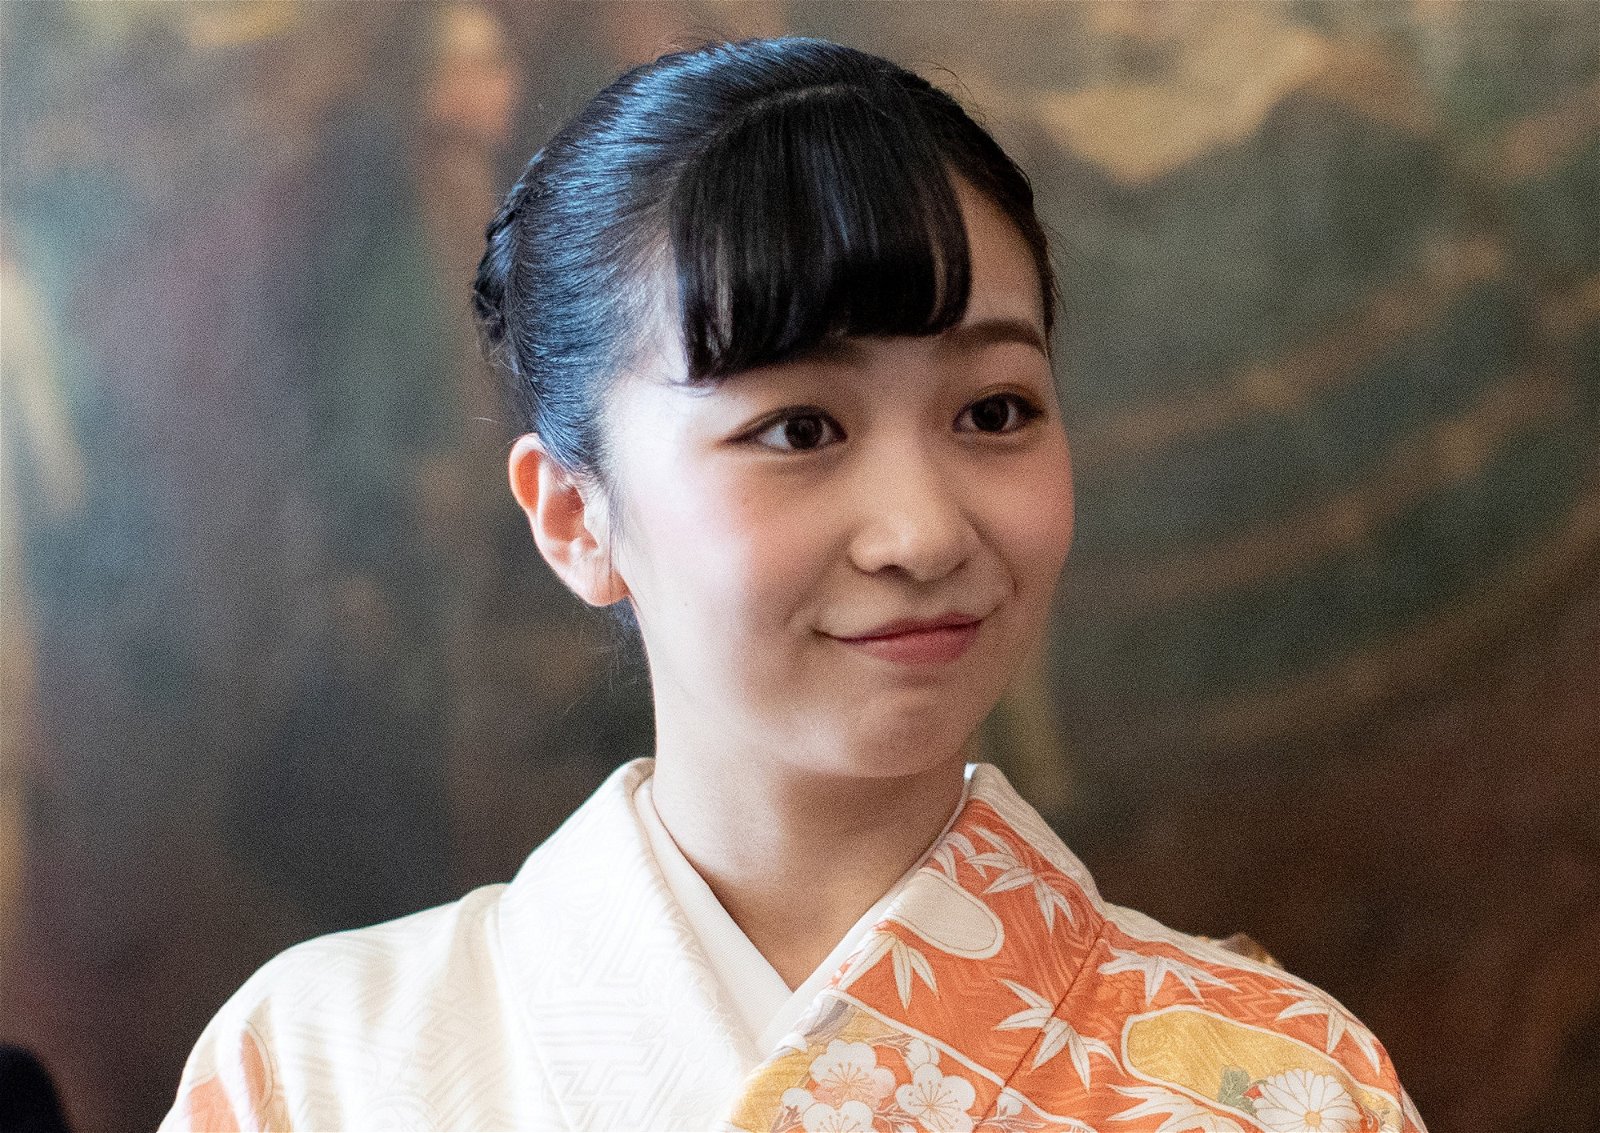 24岁的佳子公主浅浅的笑容散发出不凡的气质。（图取自网络）